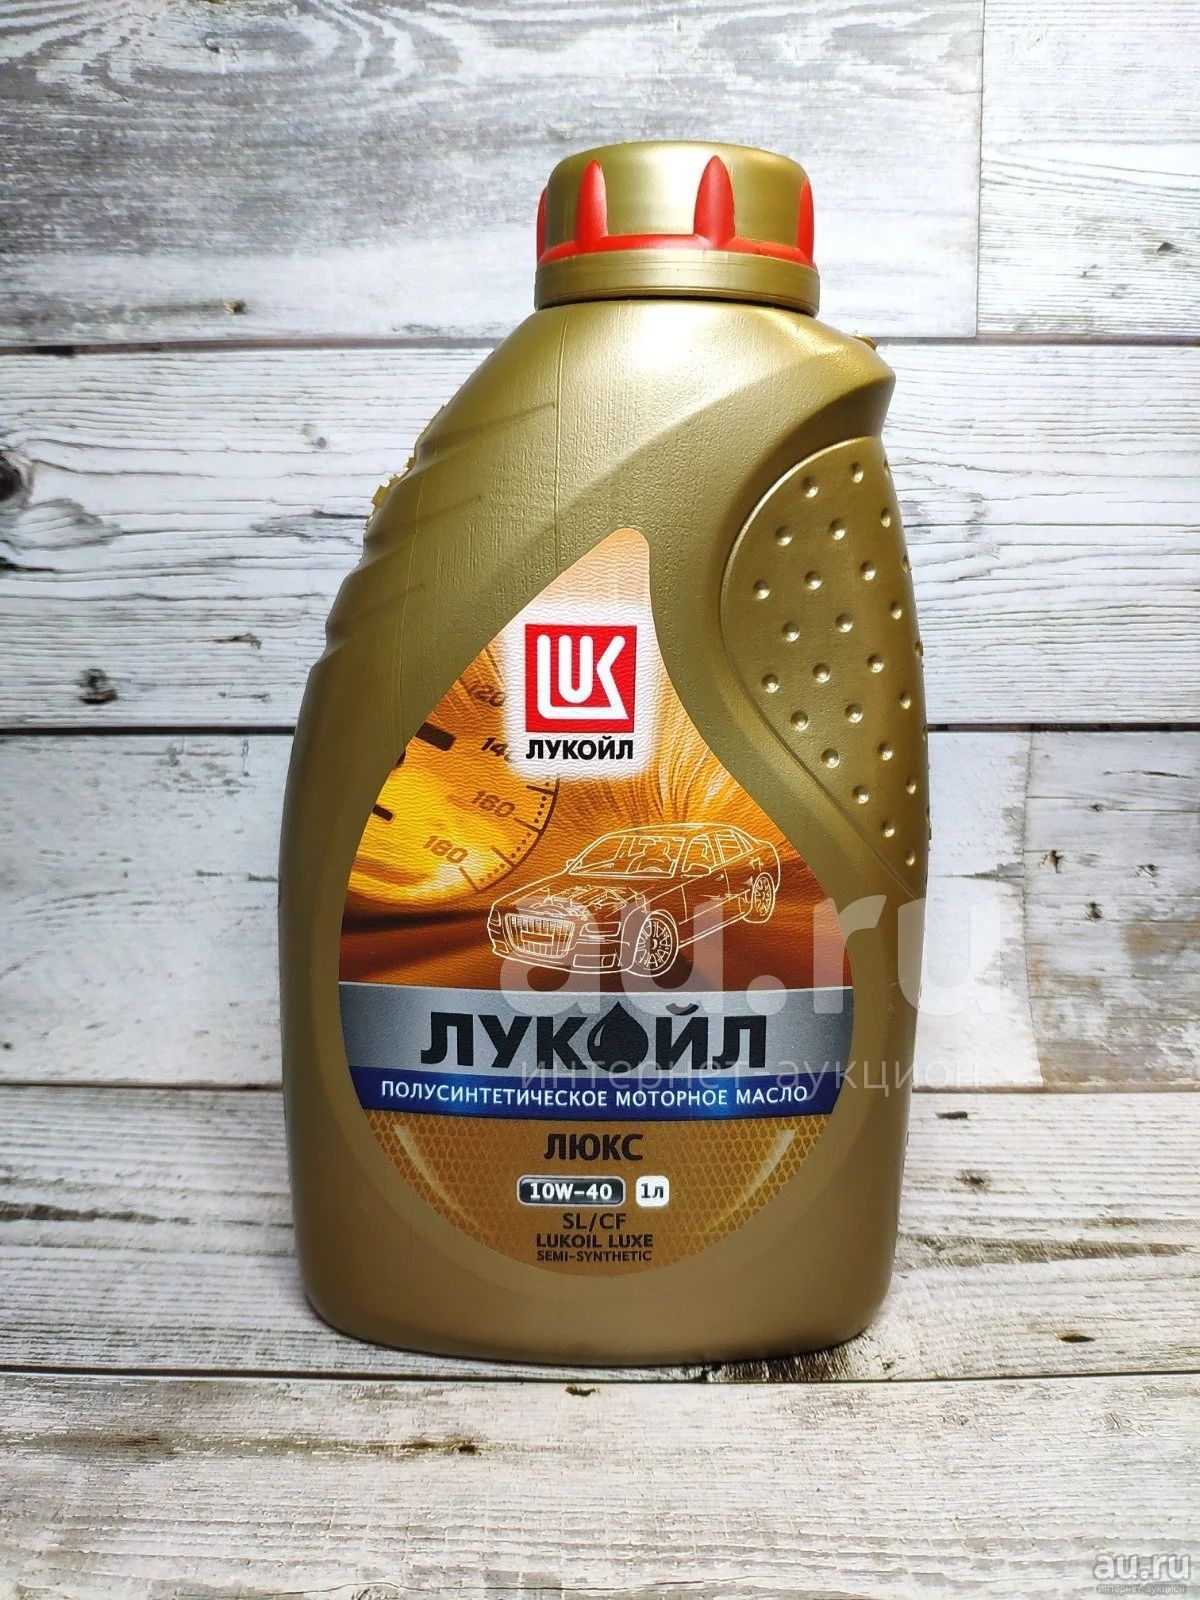 Lukoil Luxe 10w-40. Лукойл Люкс 5-40 полусинтетика 1 литр. Лукойл 10 на 40 полусинтетика 1 литр. Масло Лукойл Люкс в Весту. Масло лукойл люкс 10